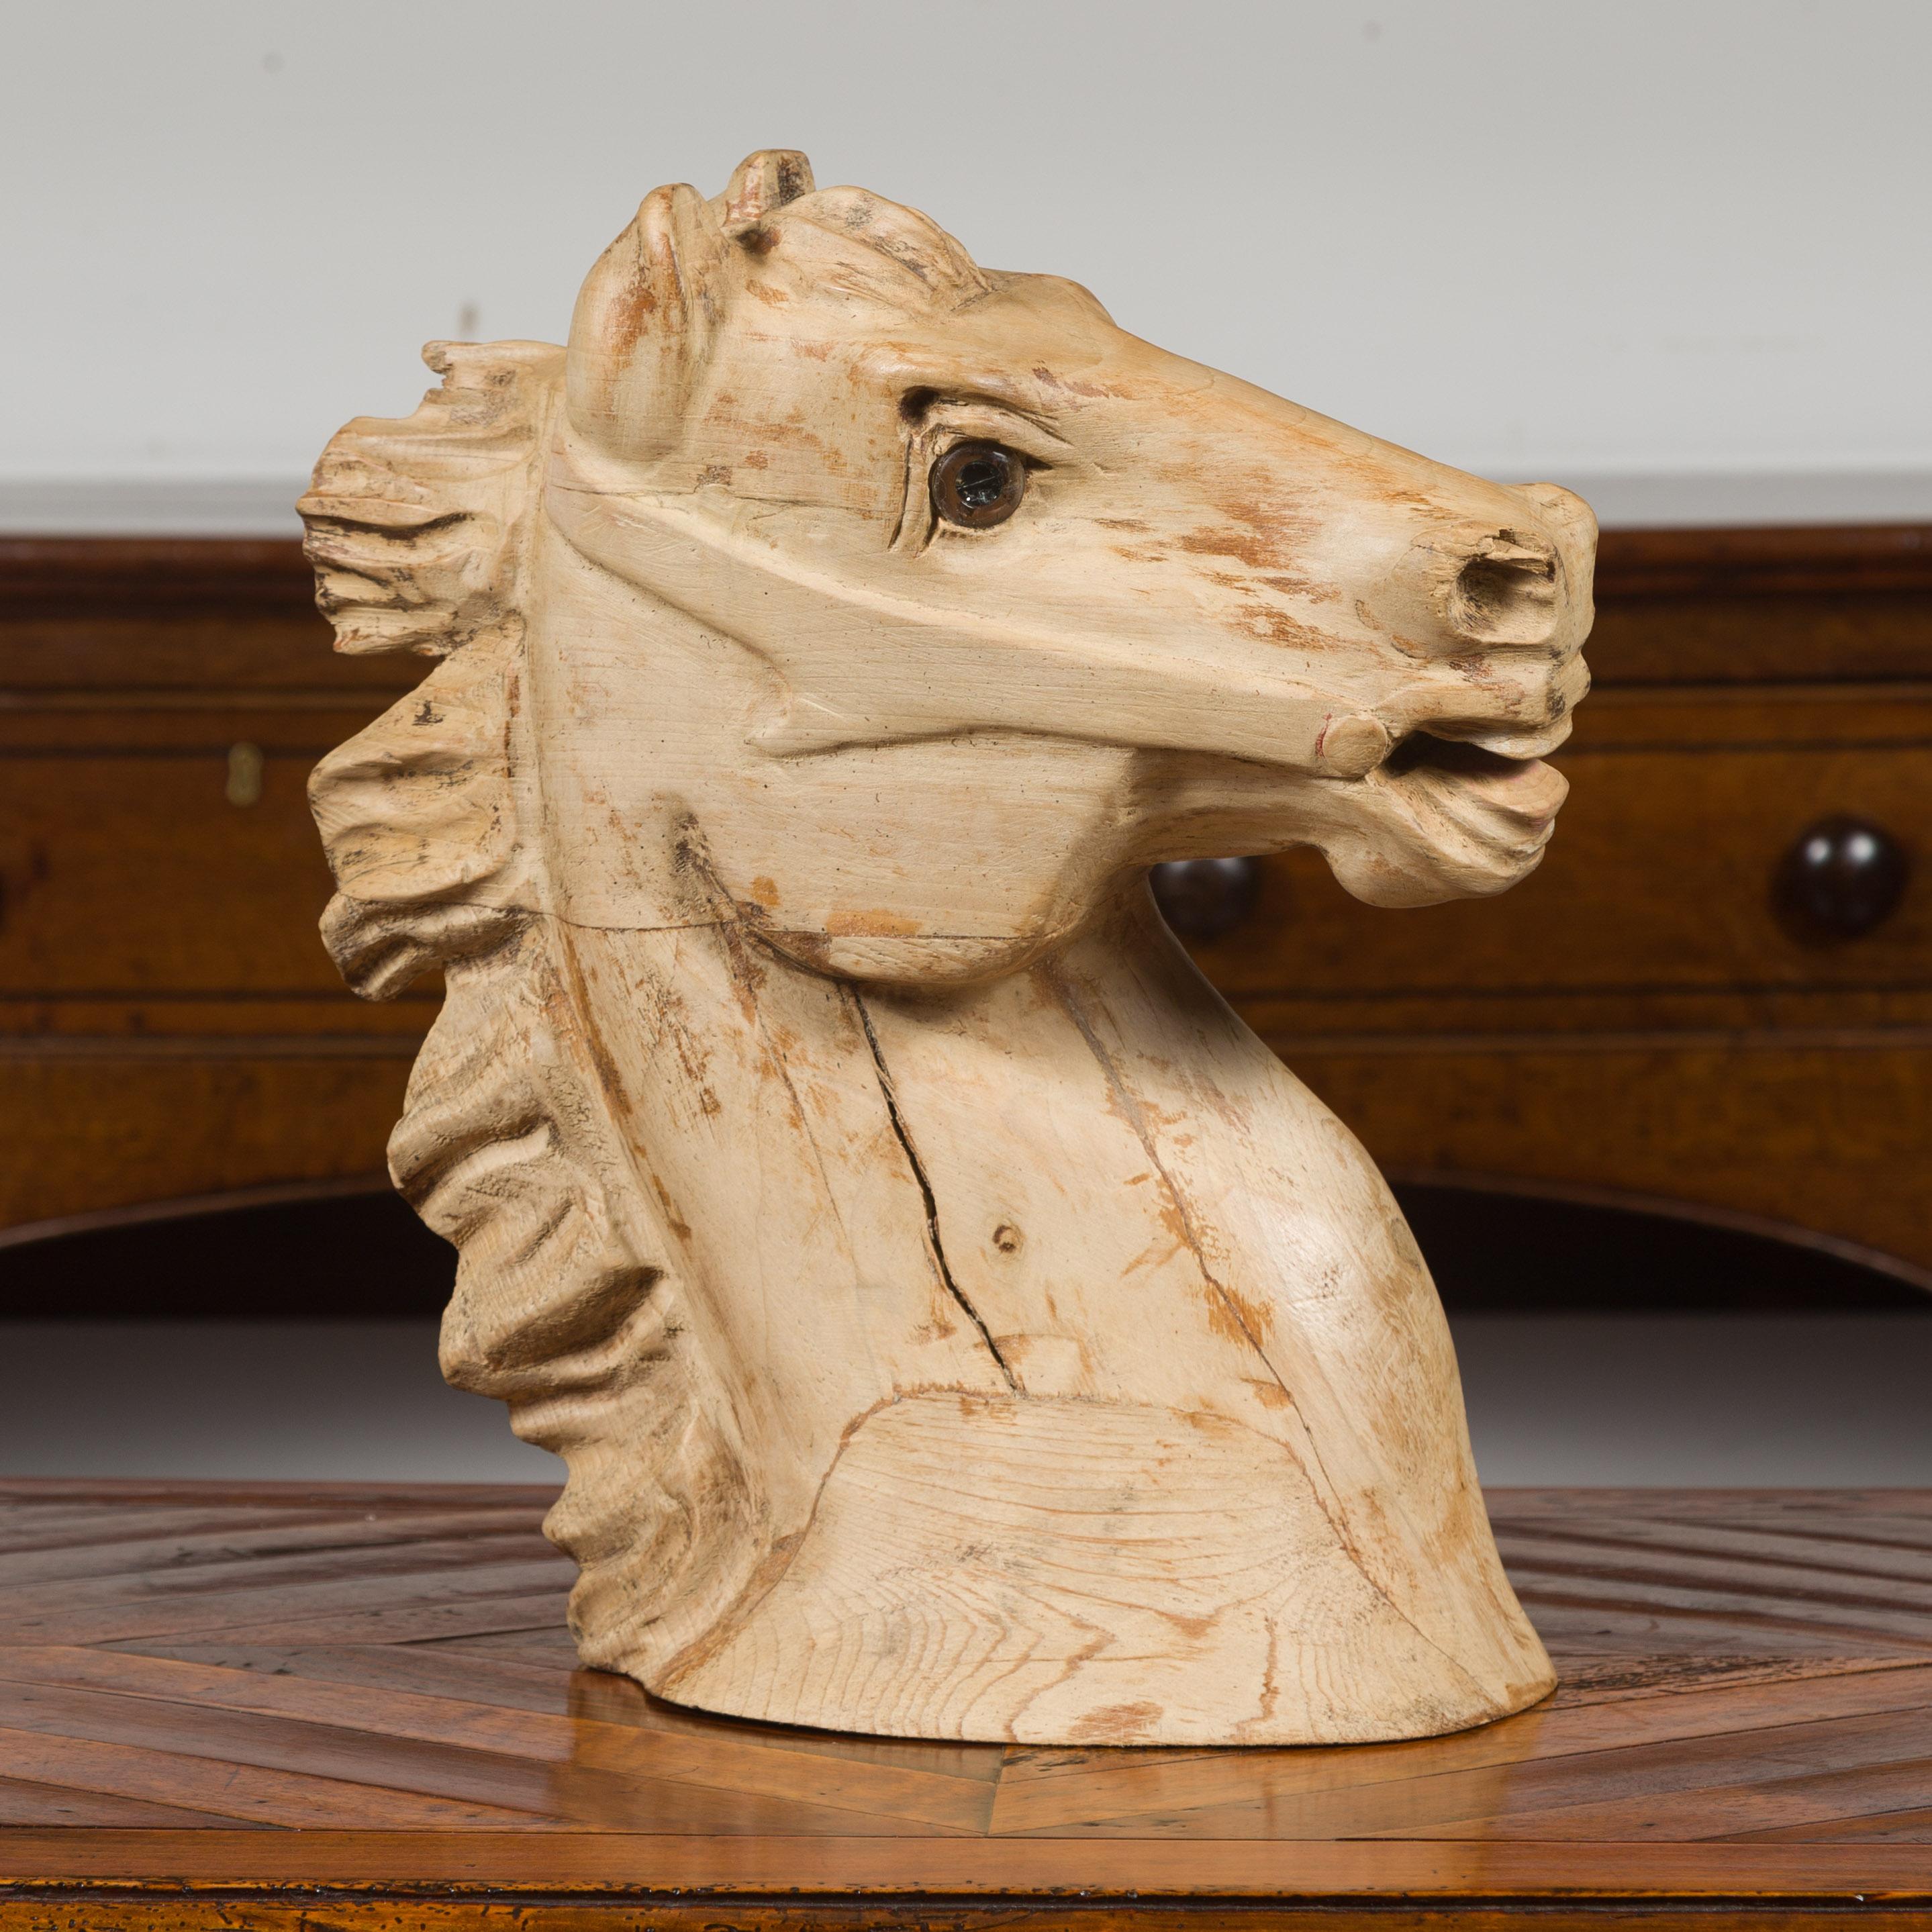 Fragment de tête de cheval américain en bois sculpté, datant du milieu du 20e siècle, avec une belle patine d'usage. Fabriquée en Amérique au cours du deuxième quart du XXe siècle, cette tête en bois sculpté retient l'attention par ses traits